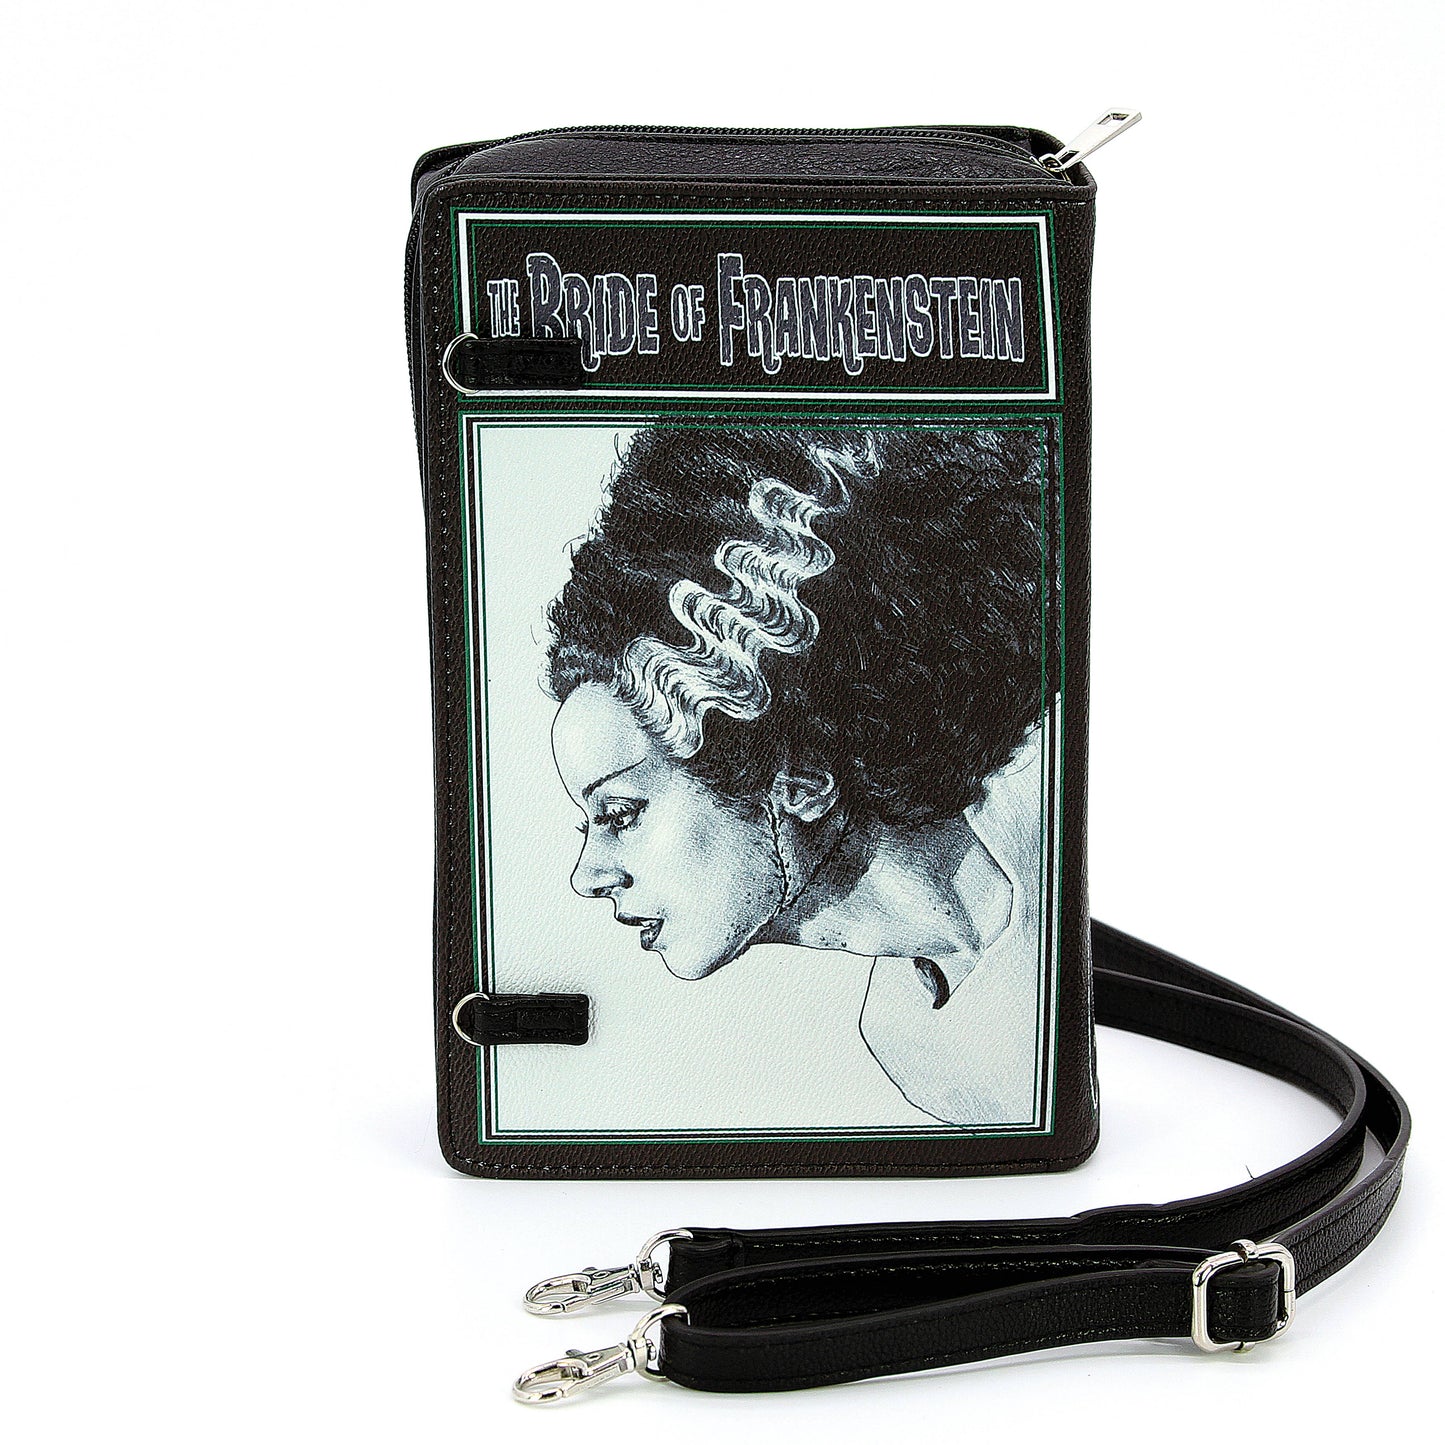 Bride of Frankenstein Book Clutch Bag in Vinyl